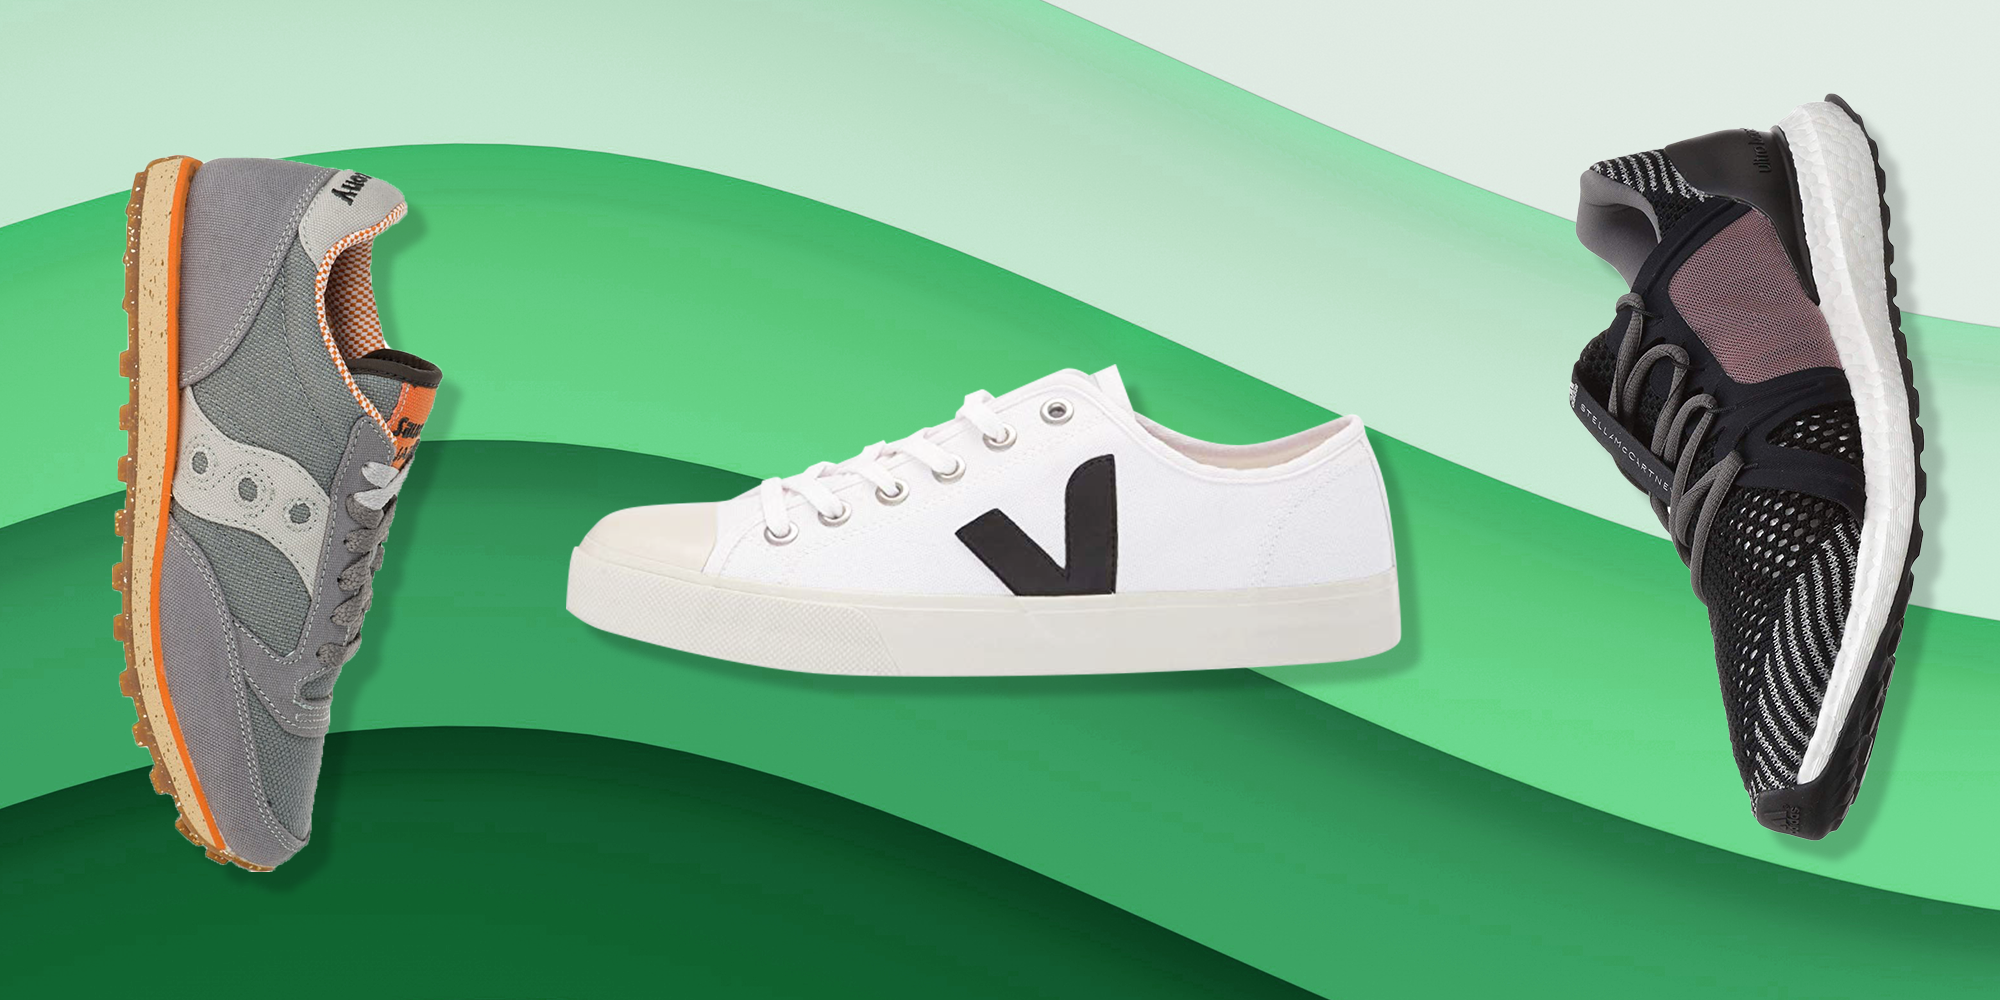 hoek vals het dossier 12 Best Vegan Sneakers Brands For 2022 Based On Customer Reviews